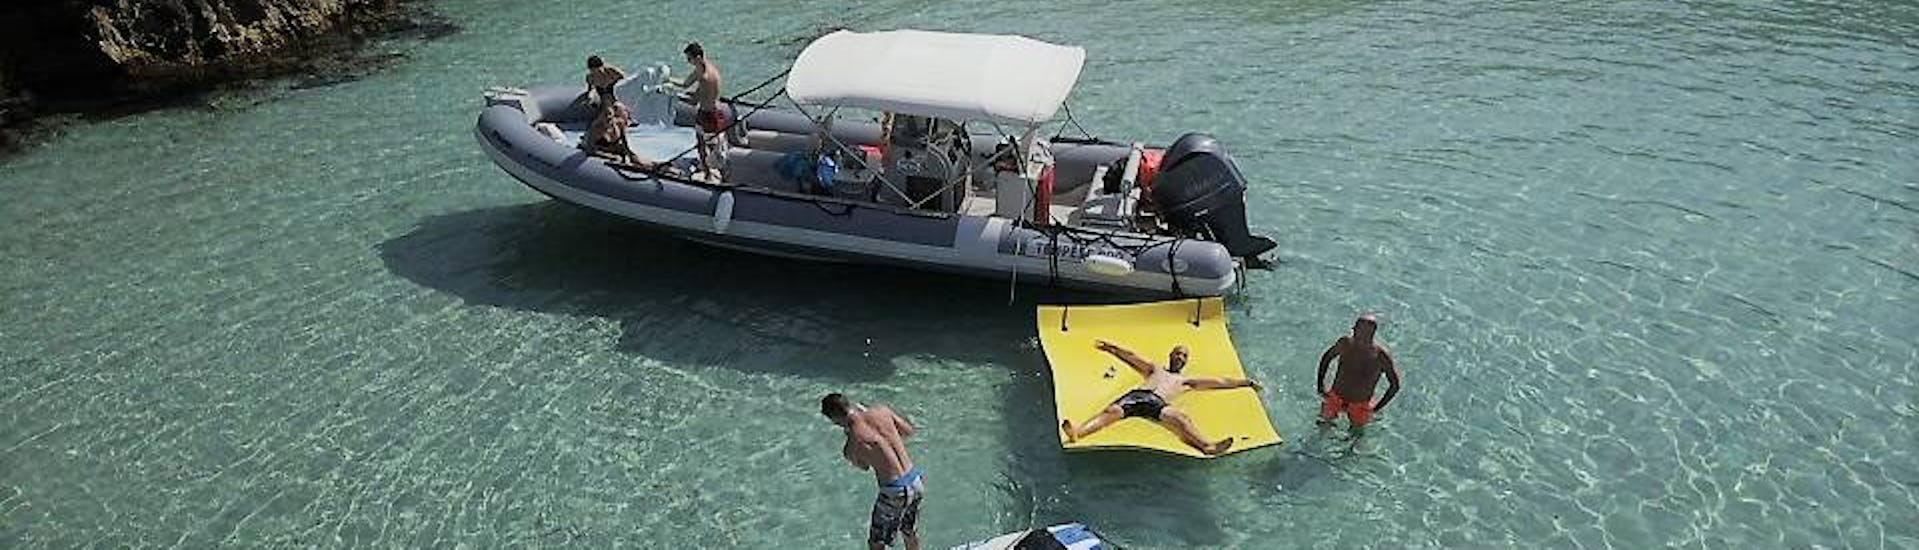 Boot met mensen in het water van een baai die standup paddling, snorkelen en zwemmen doen tijdens Boottocht in Ibiza met Snorkelen en Open Bar door Arenal Diving & Boat Trips Ibiza.